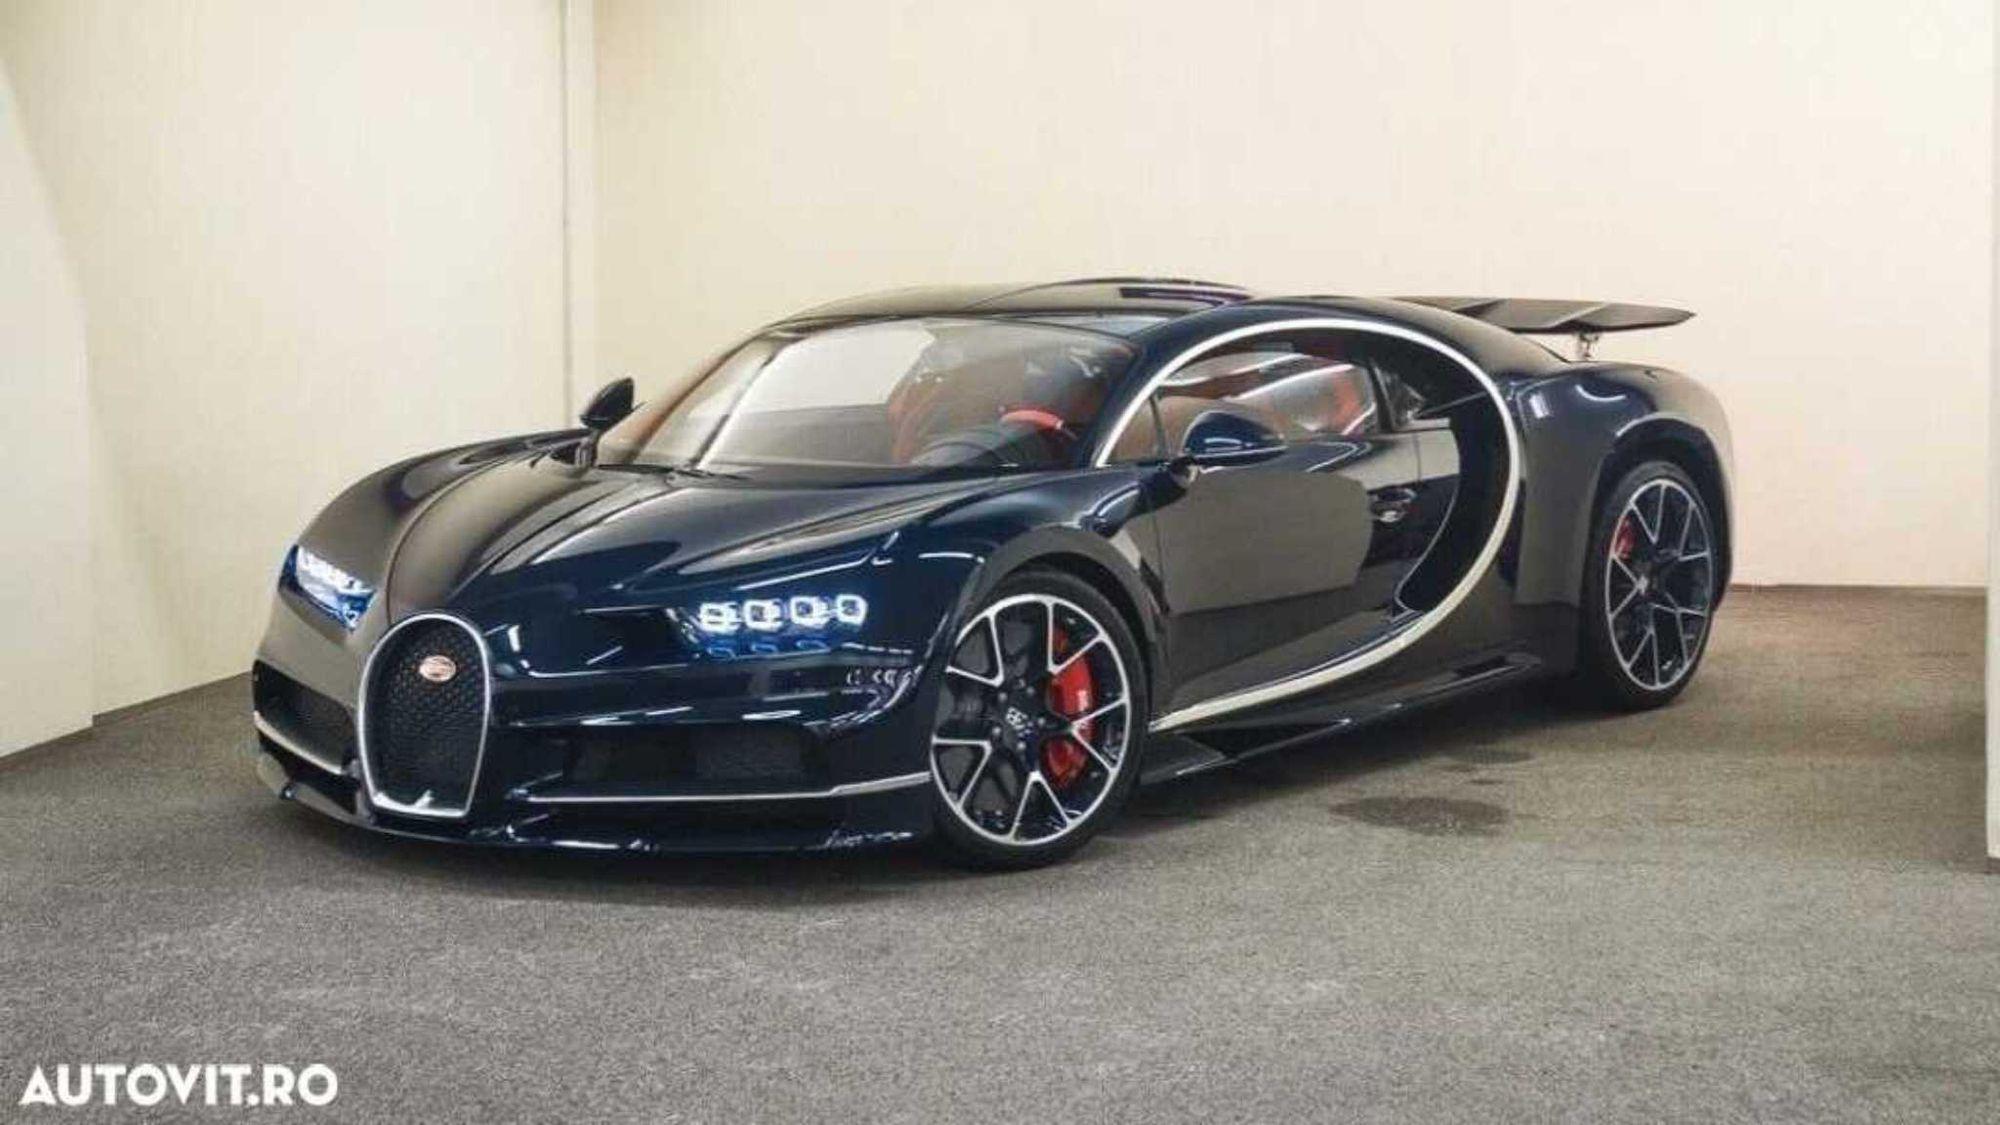 Ofertă second-hand în România: Bugatti Chiron. Atenție, prețul nu este mic!